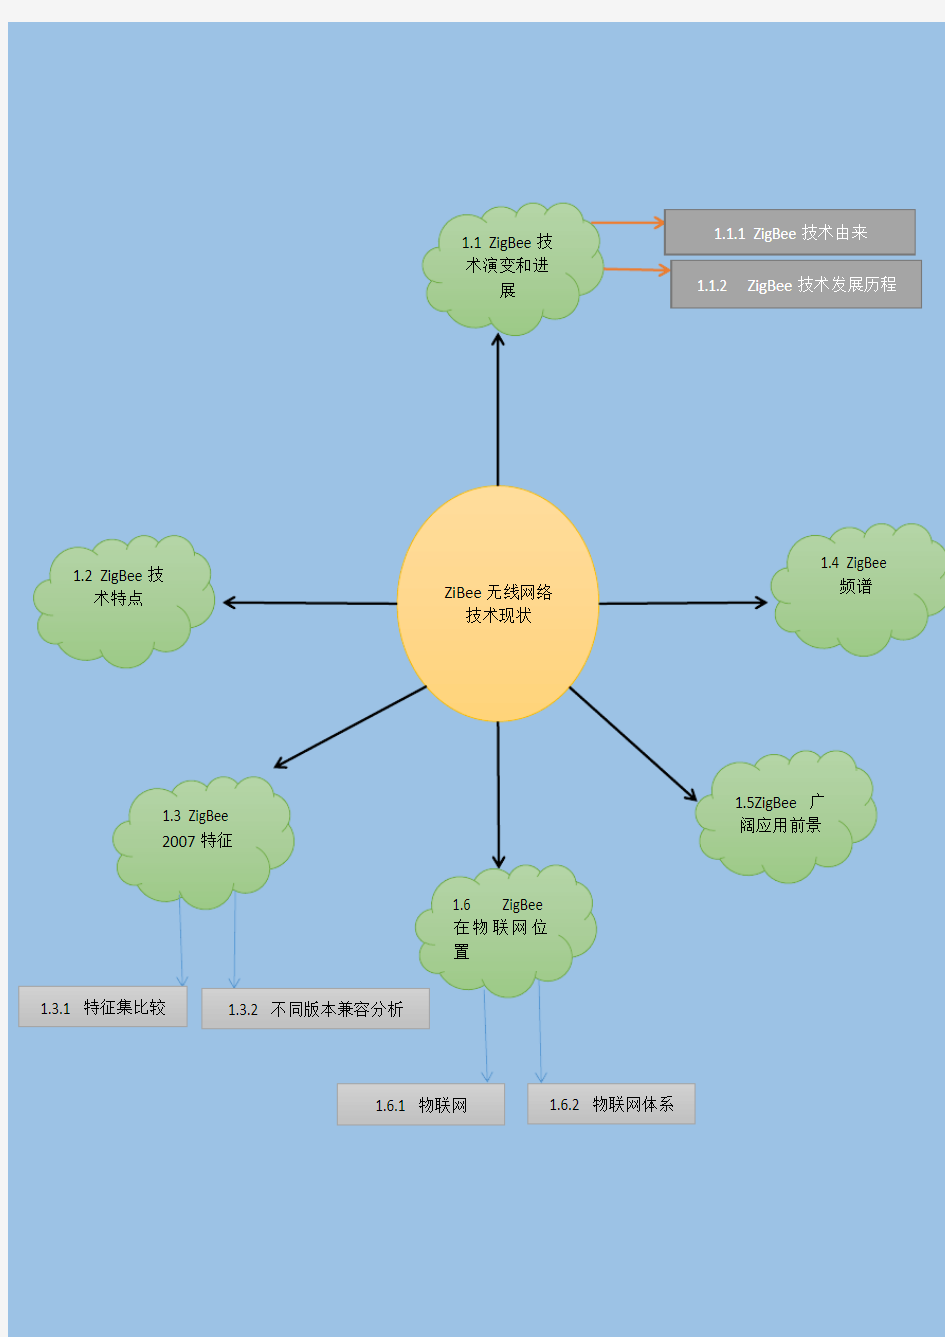 ZigBee 无线网络技术现状-结构图